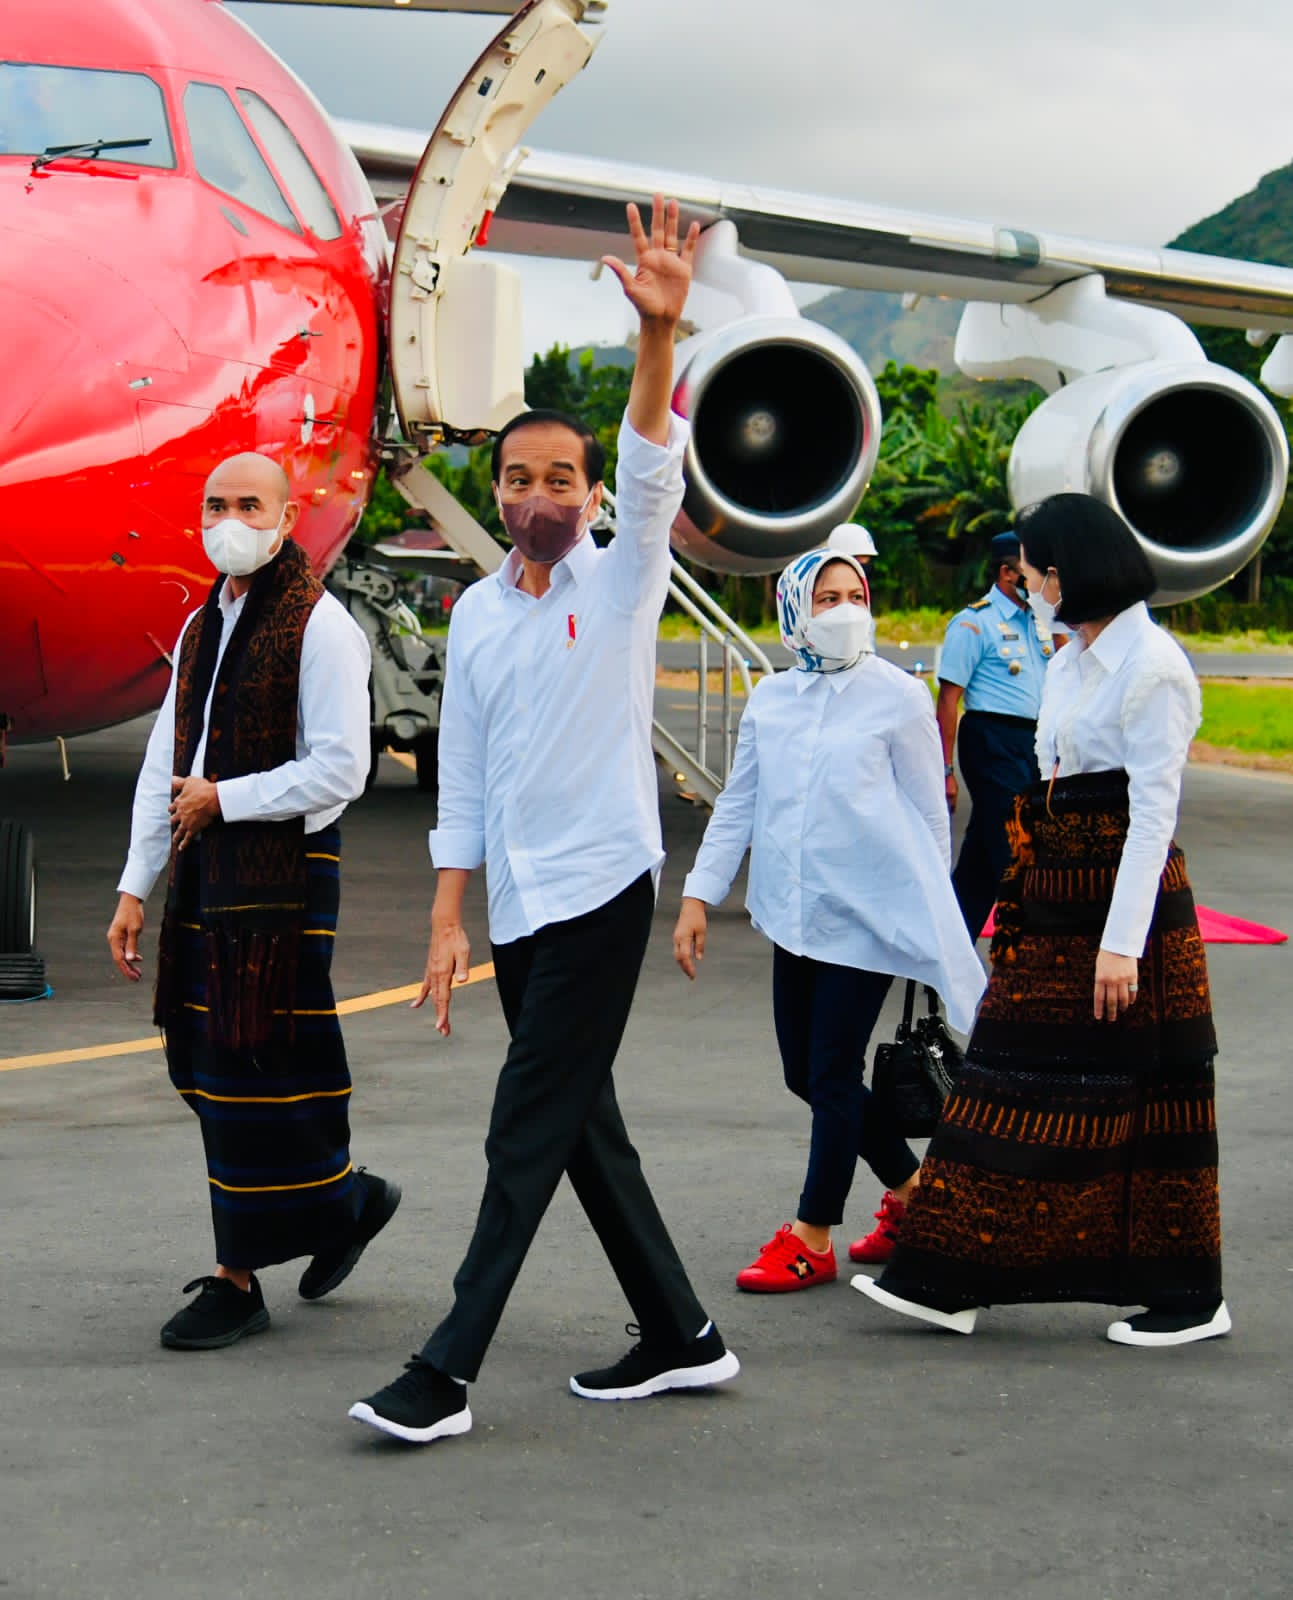 Presiden RI Ke-2 Yang Mengunjungi Kota Pancasila Ende, Presiden Jokowi Disambut Meriah 